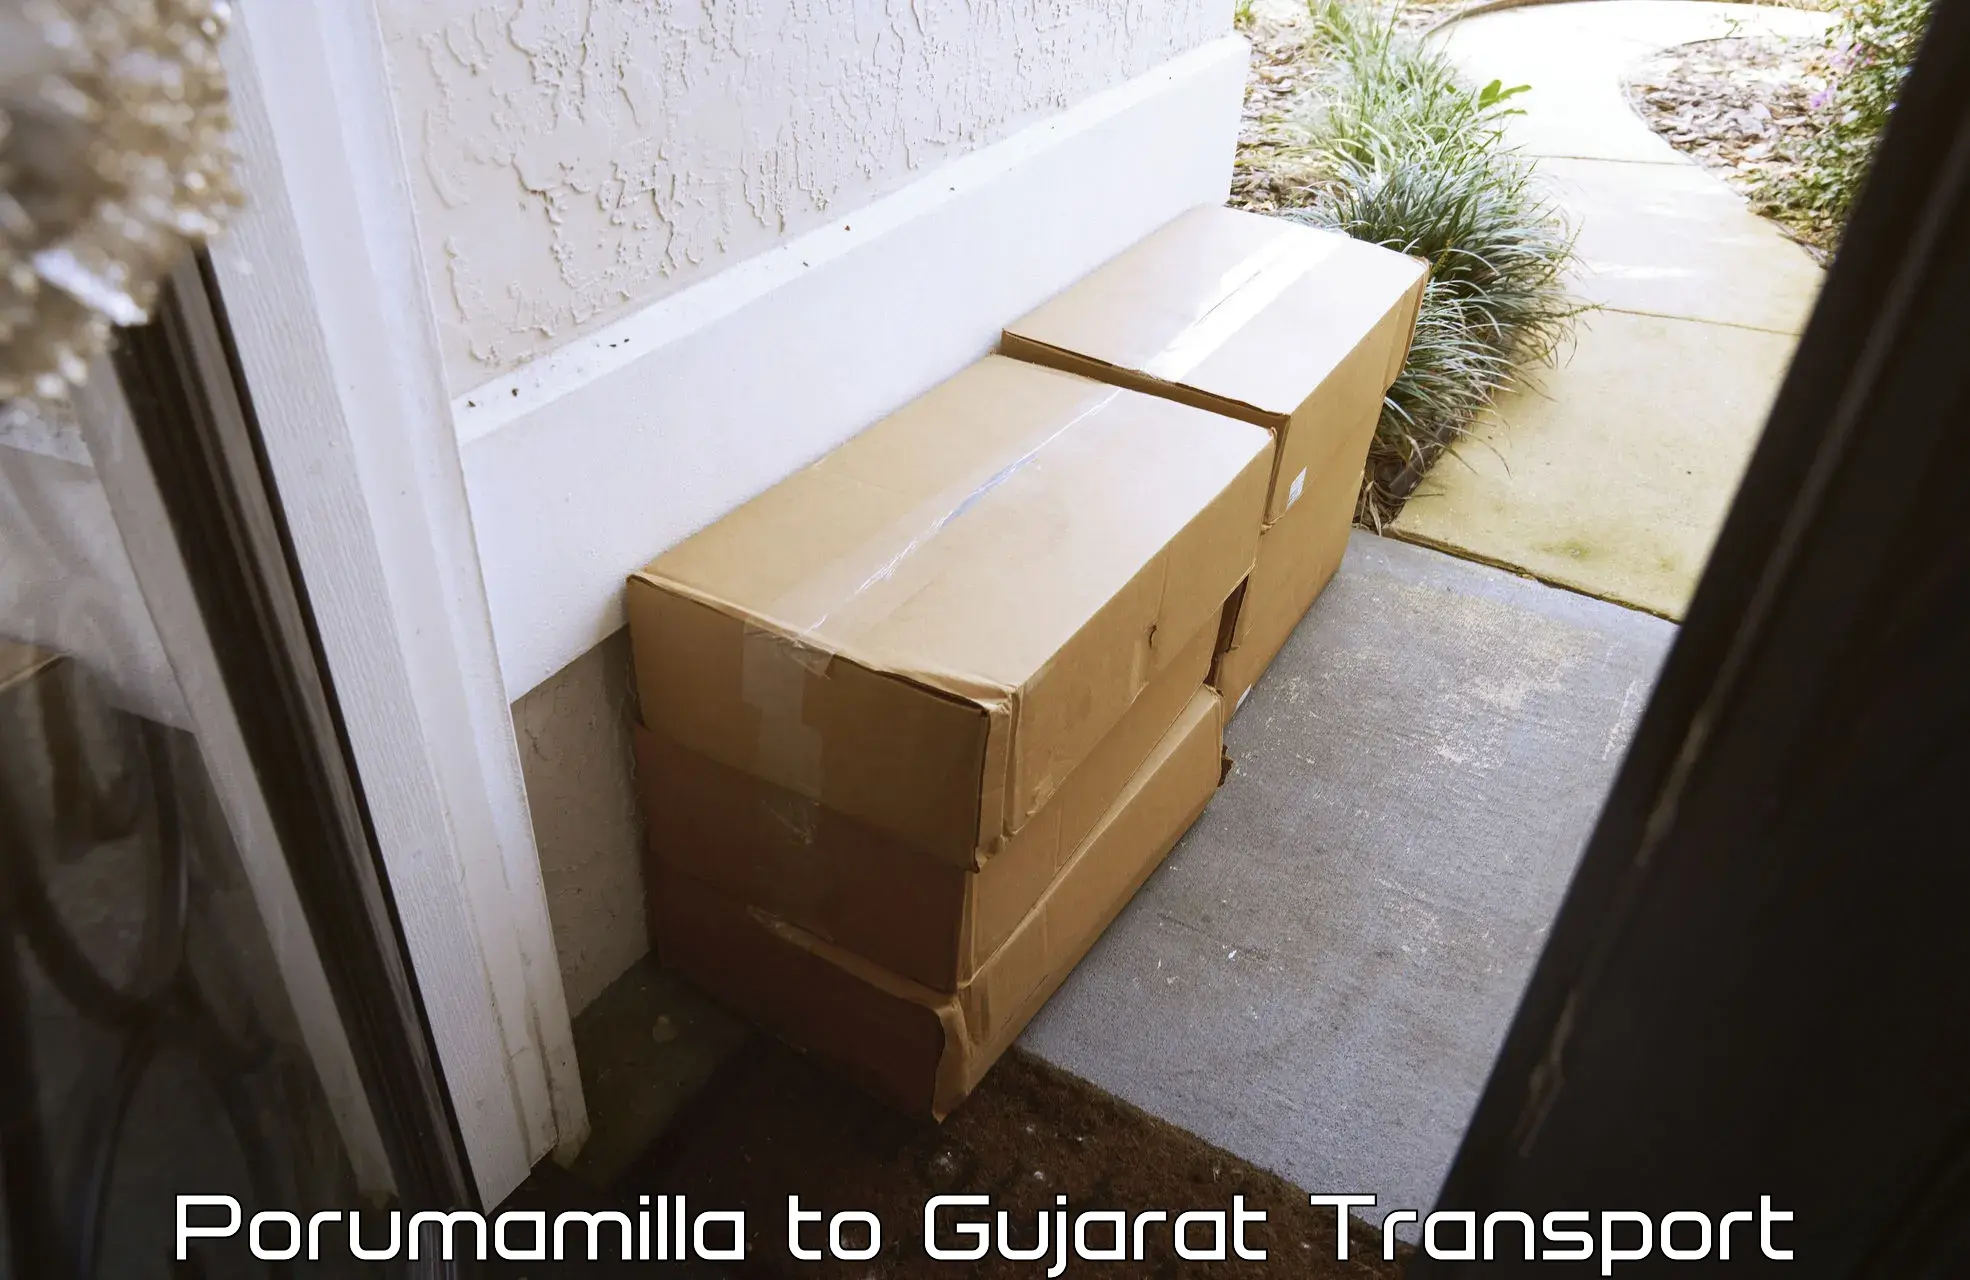 Express transport services Porumamilla to Gujarat